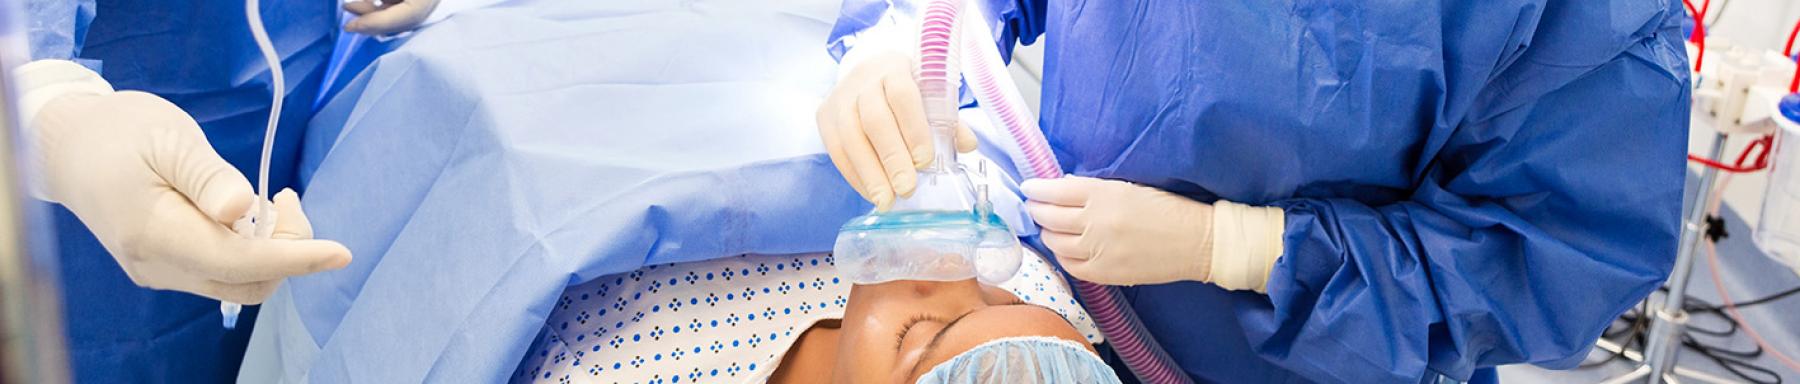 Máster enfermeria anestesia reanimacion tratamiento dolor